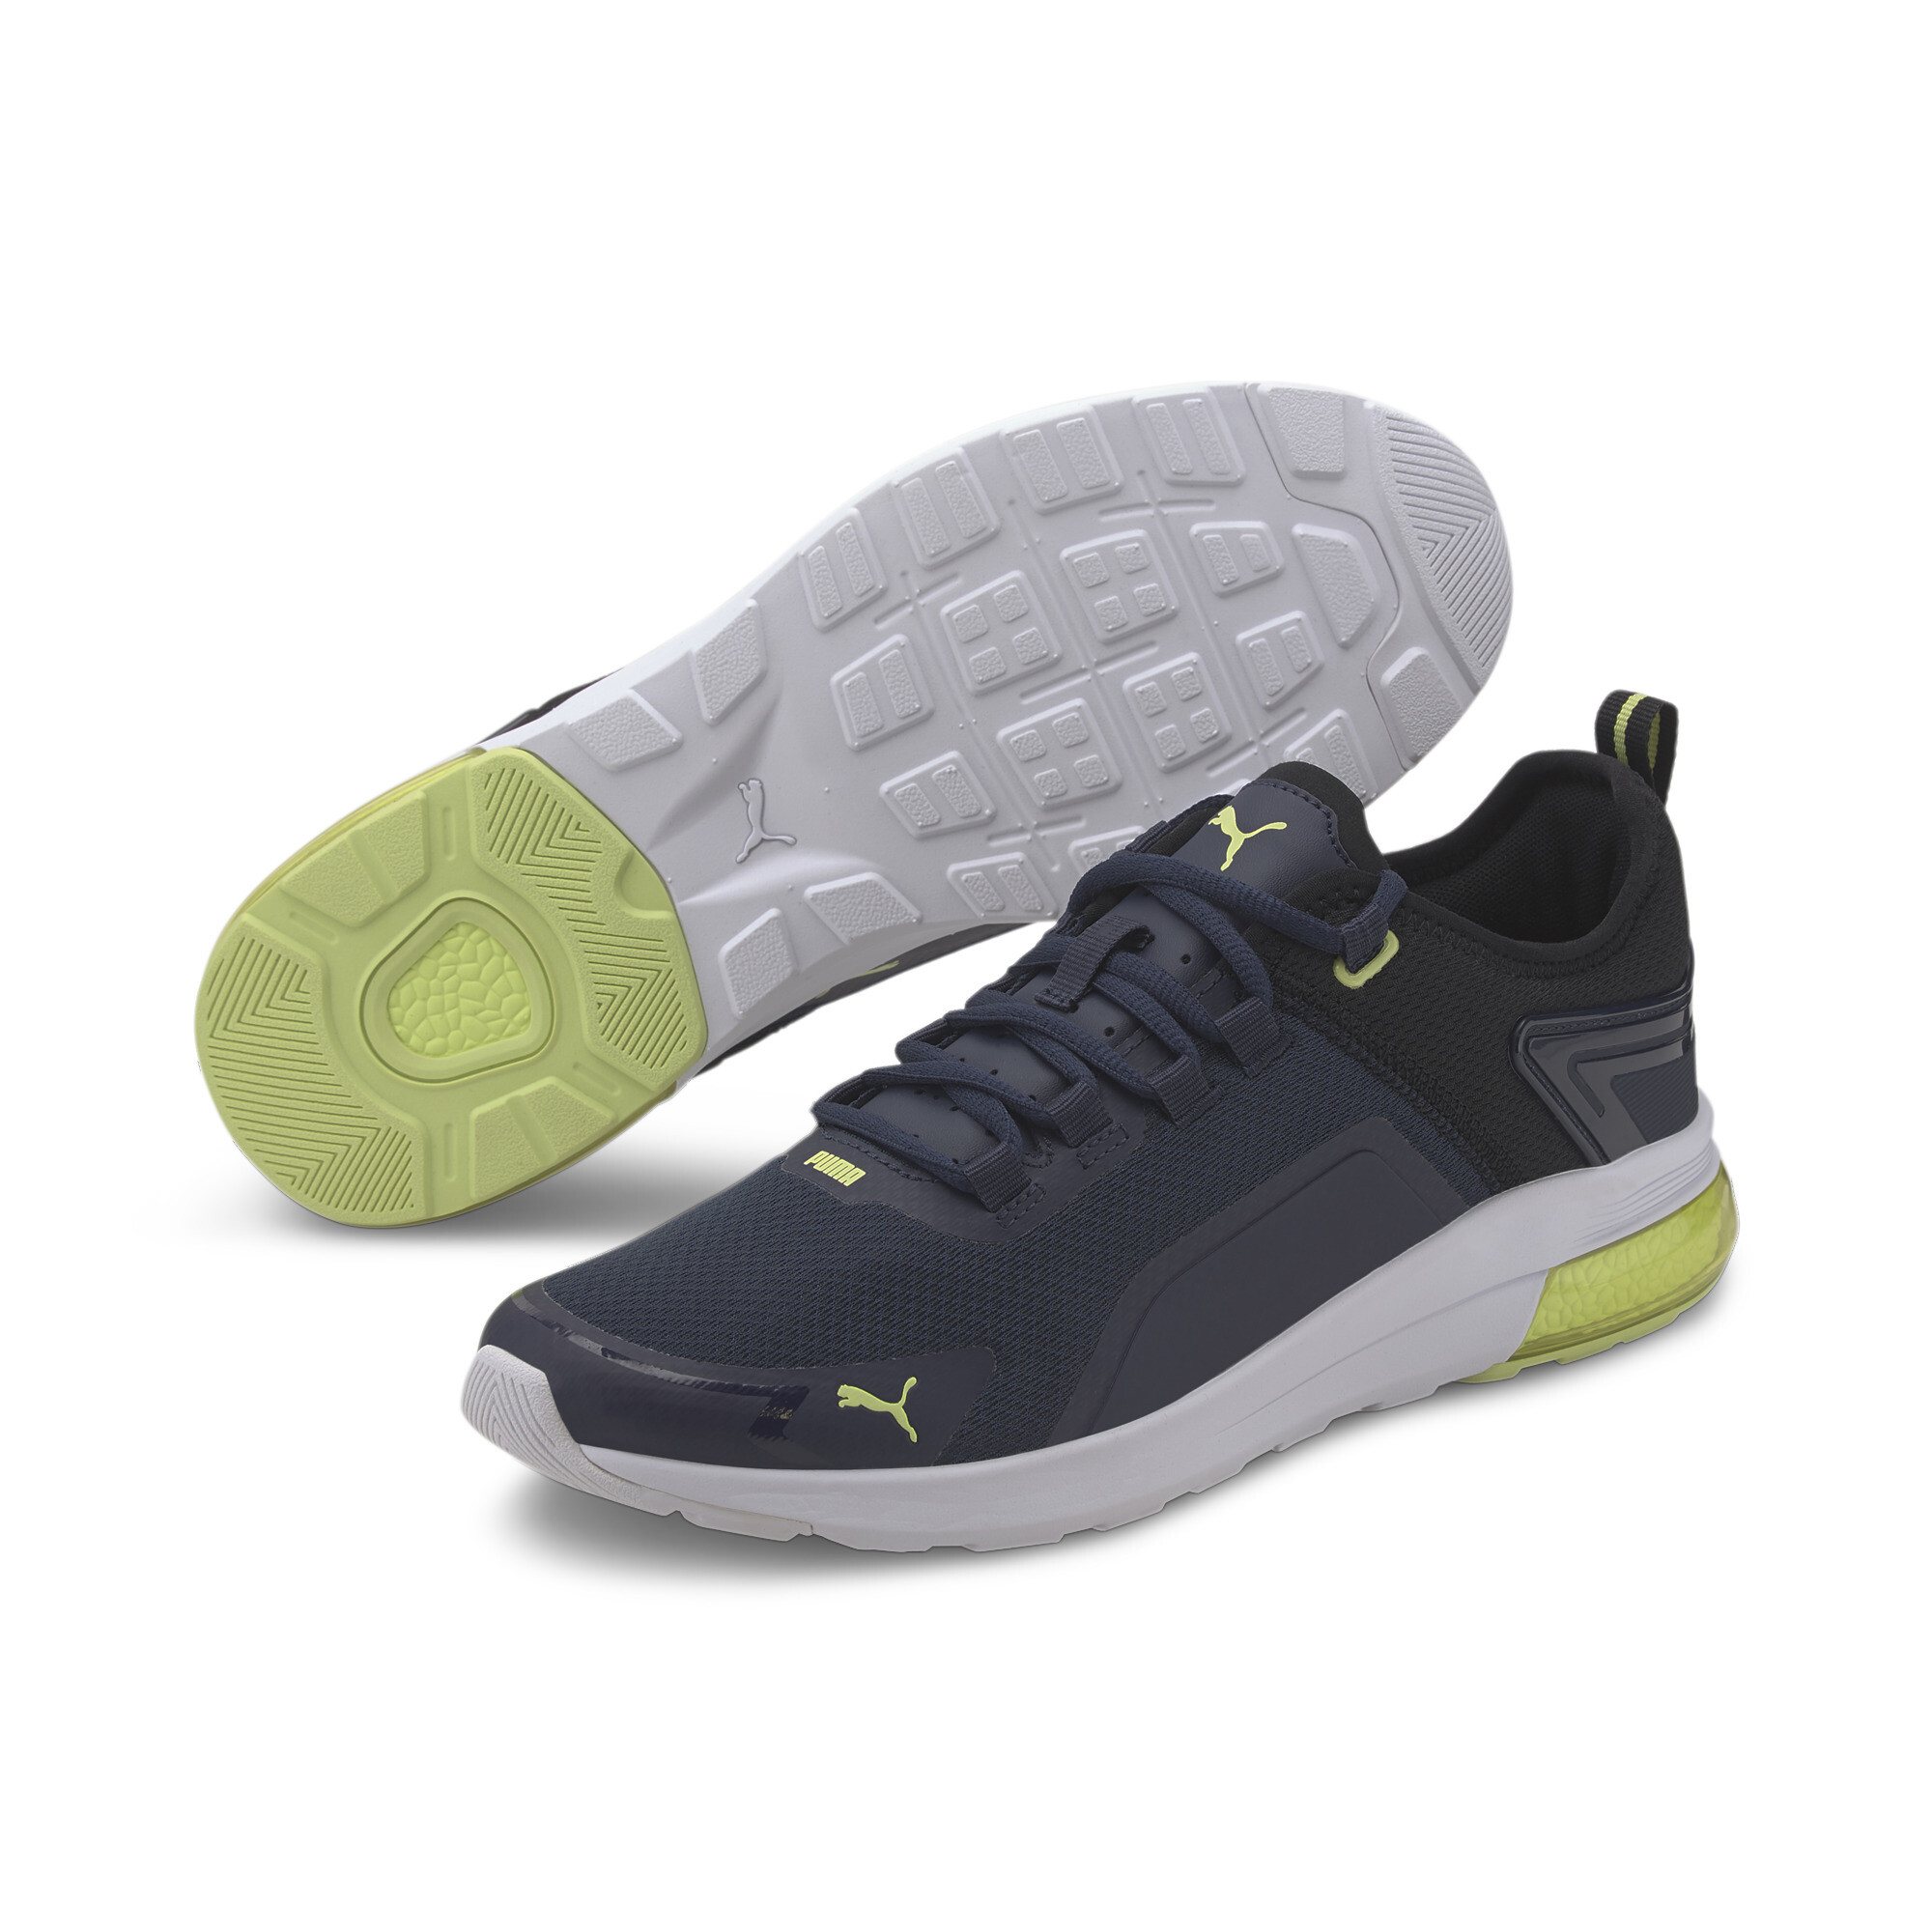 Indexbild 8 - PUMA Electron Street Era Sneaker Unisex Schuhe Basics Neu